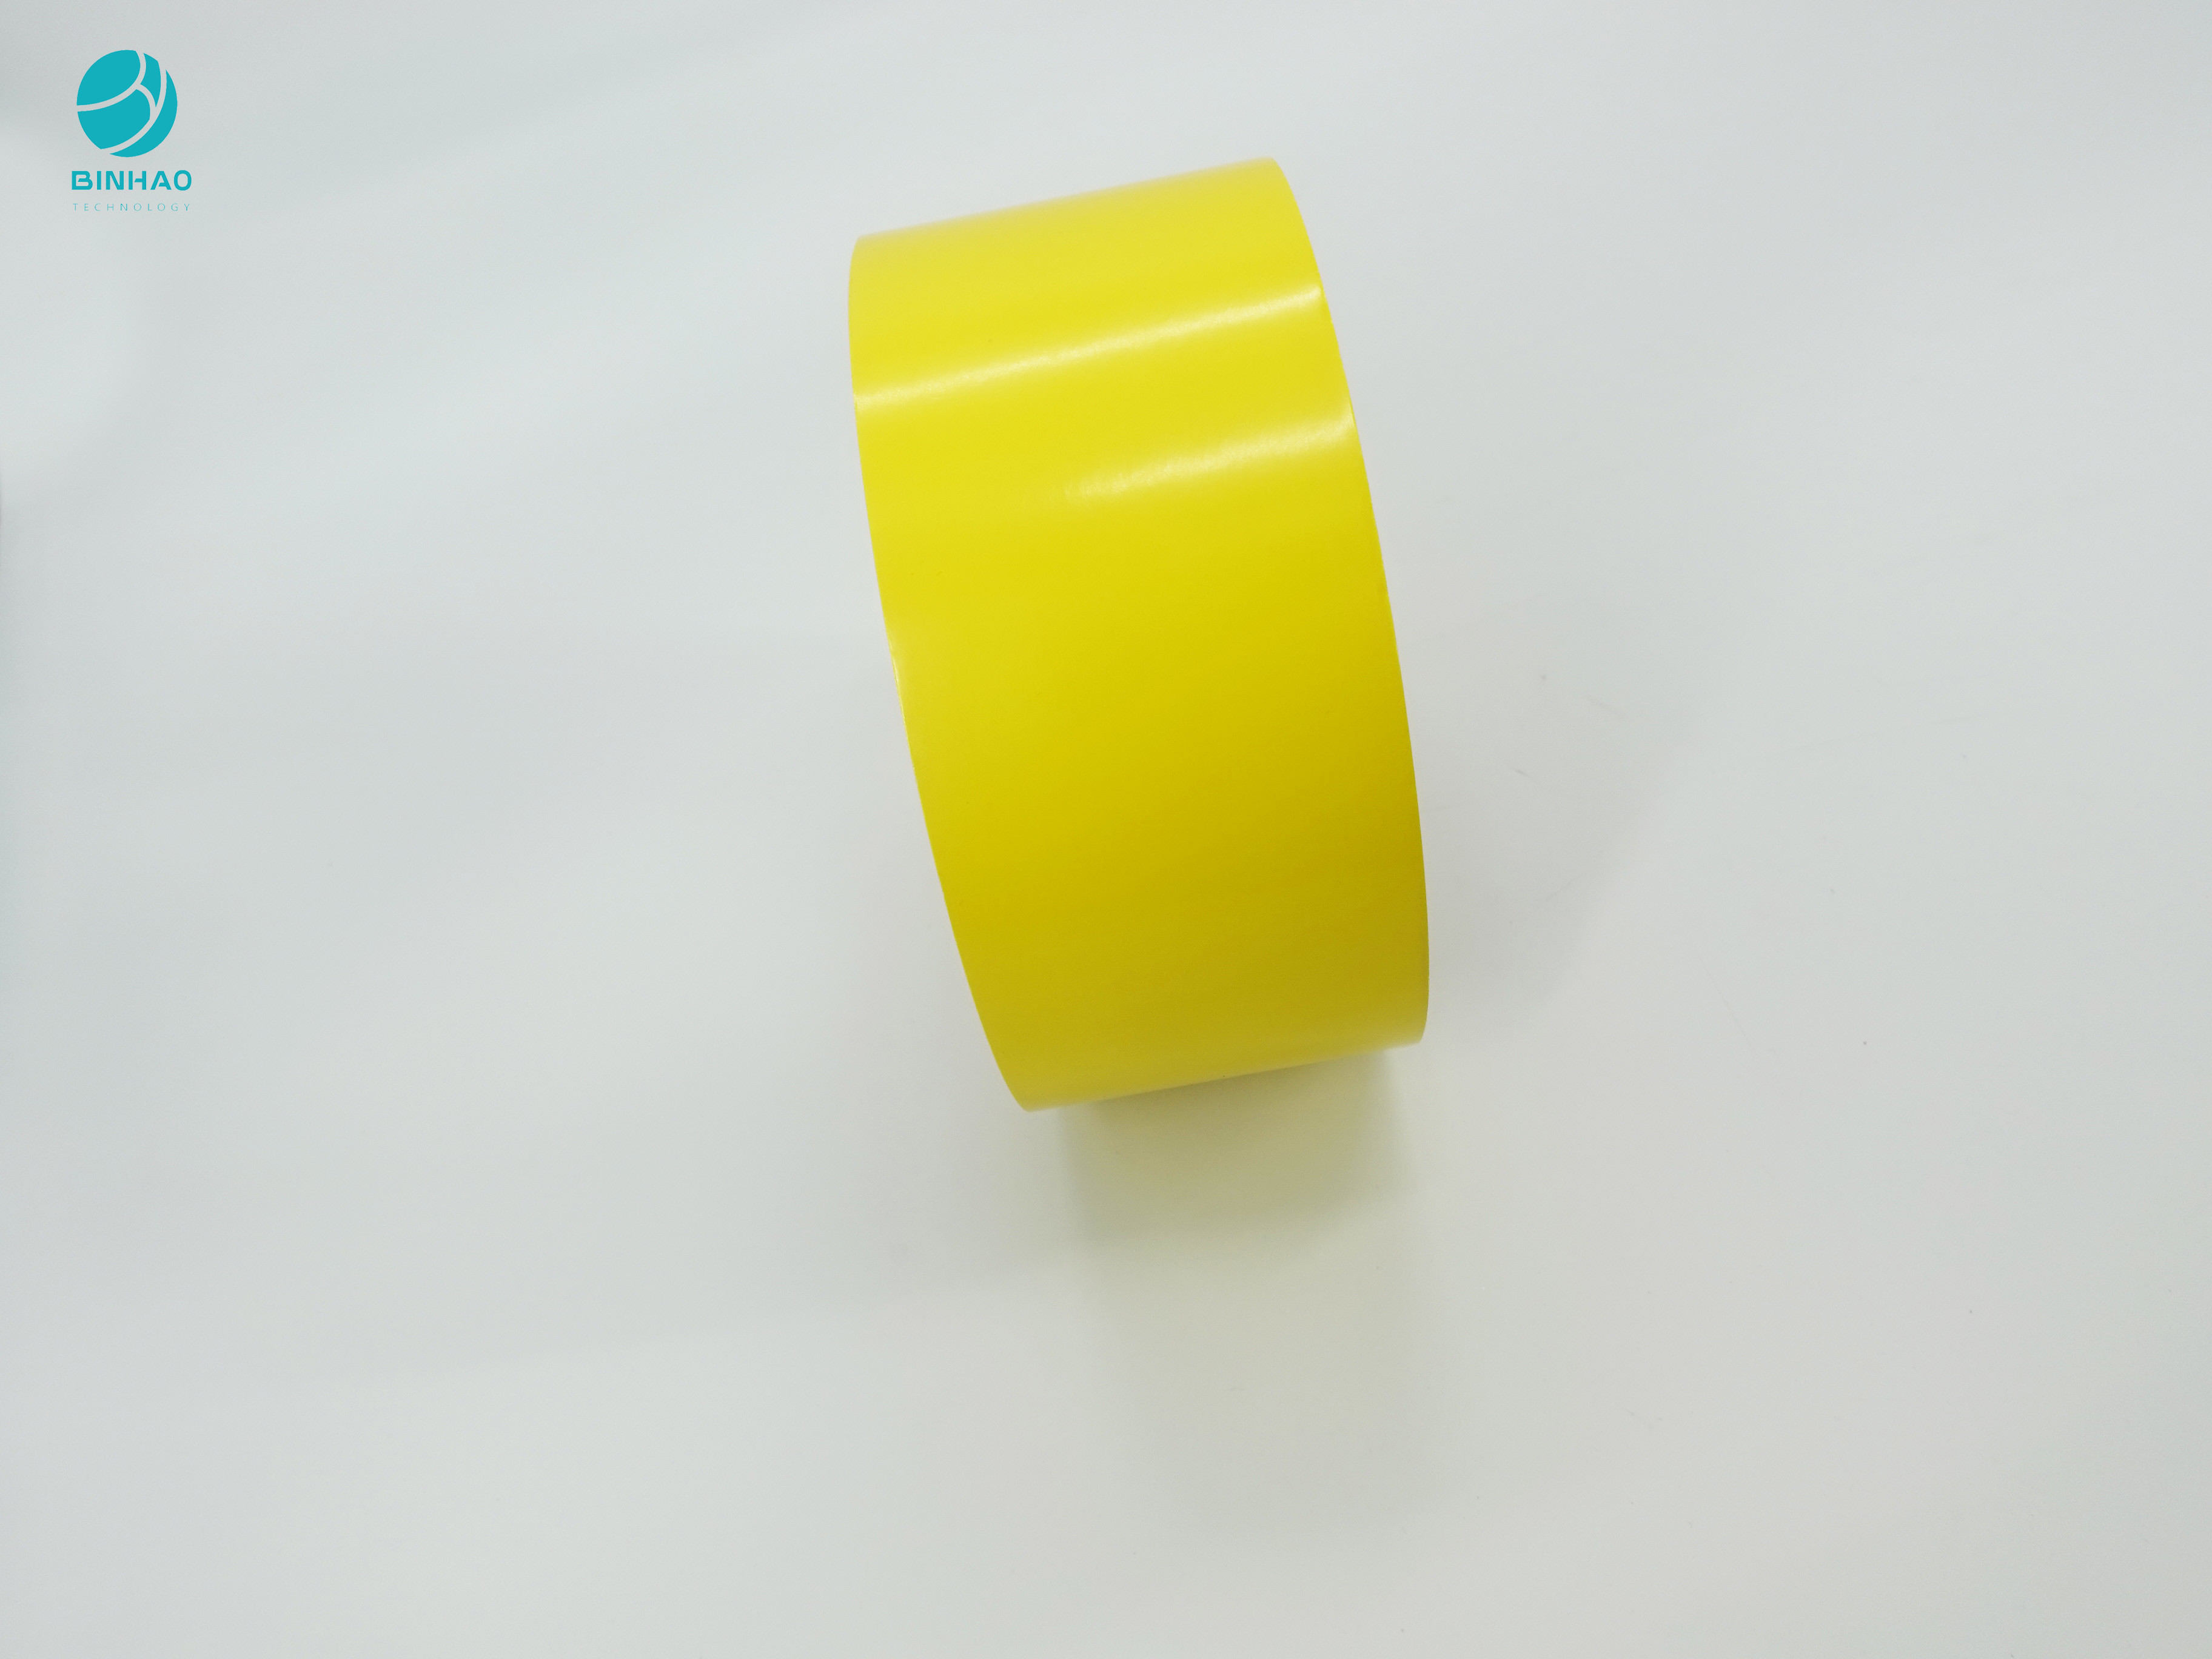 กระดาษแข็งด้านในสีเหลืองสดใส 95 มม. สำหรับบรรจุยาสูบบุหรี่